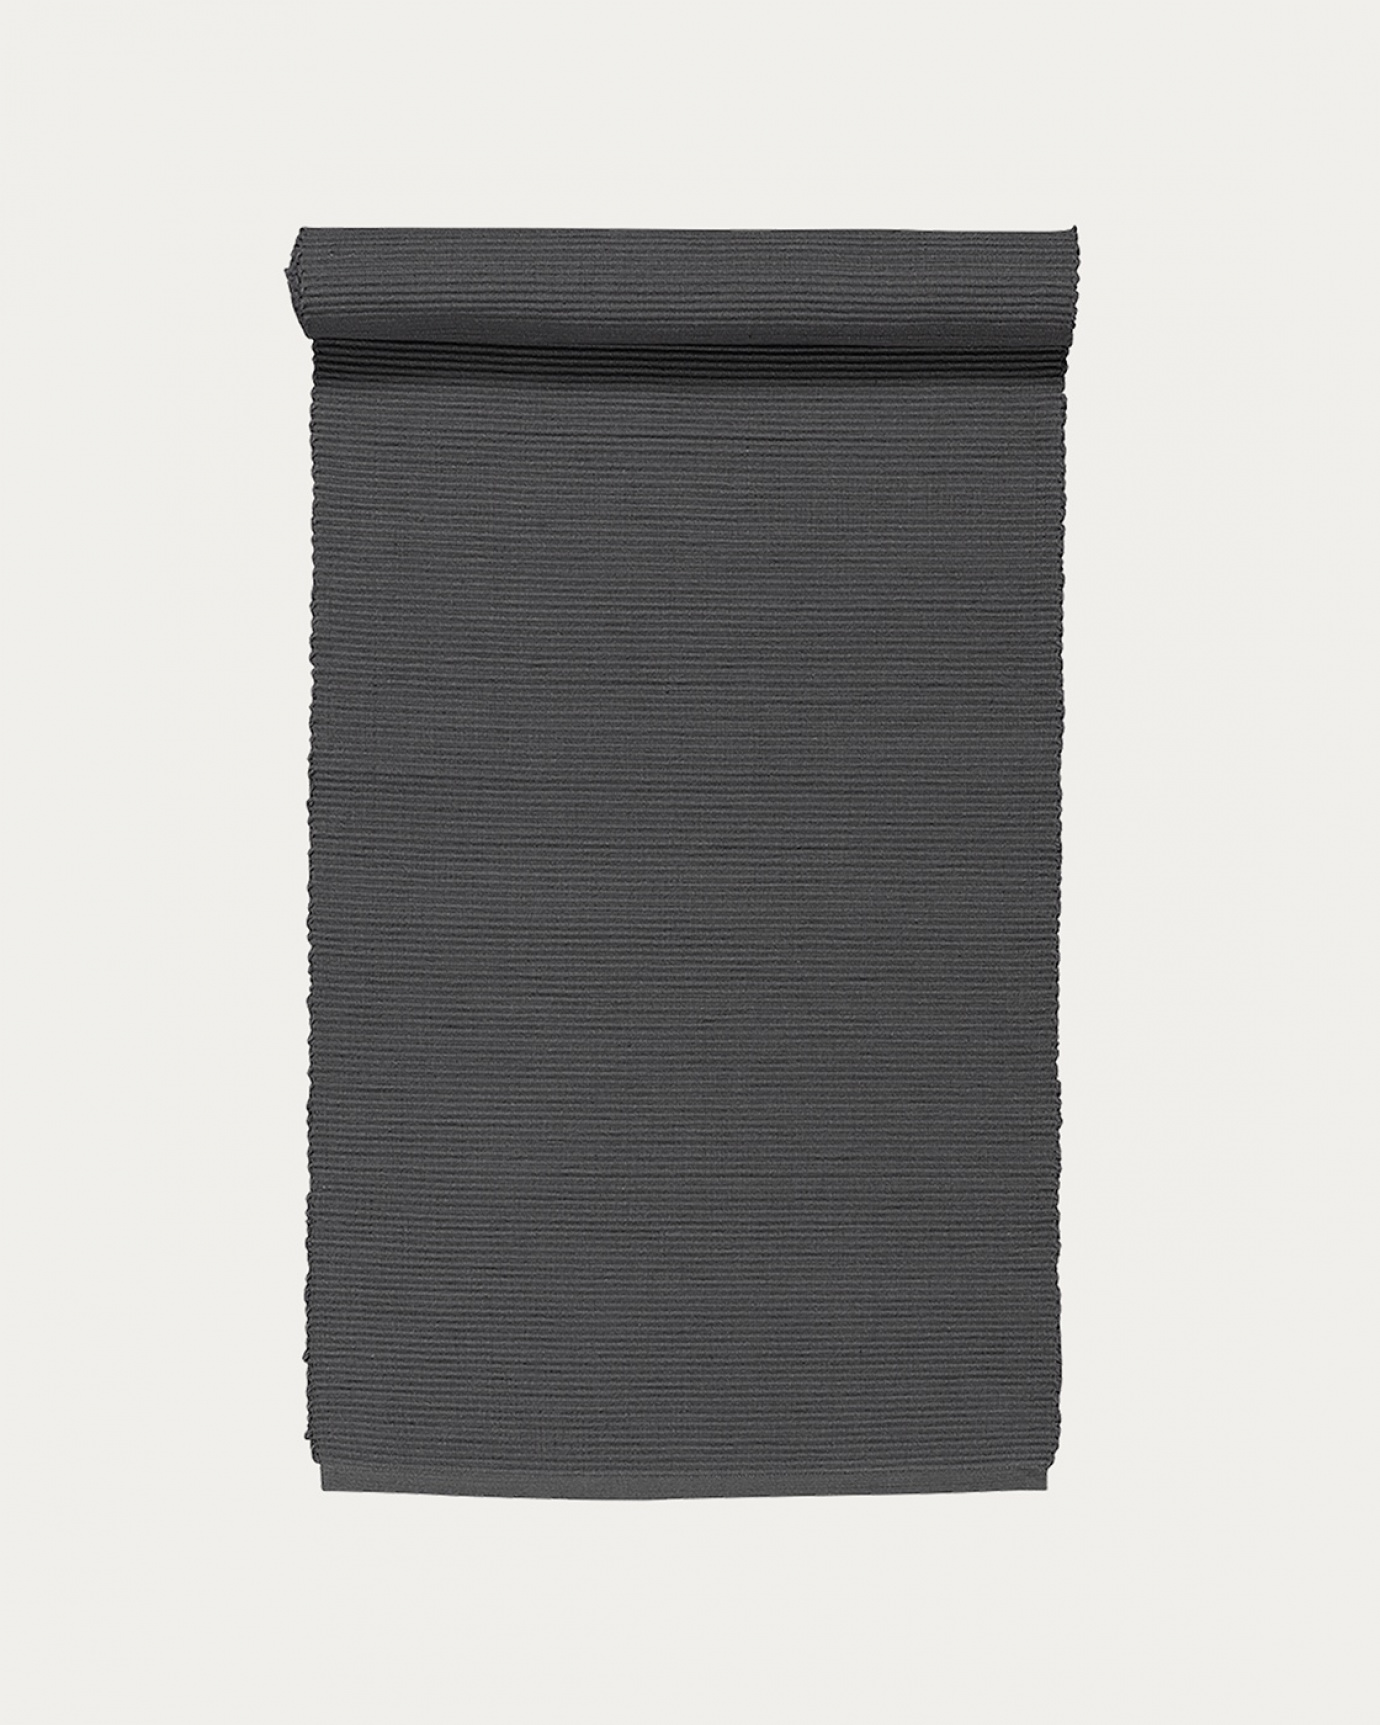 Image du produit chemin de table UNI gris foncé en coton doux de qualité côtelée de LINUM DESIGN. Taille 45 x 150 cm.